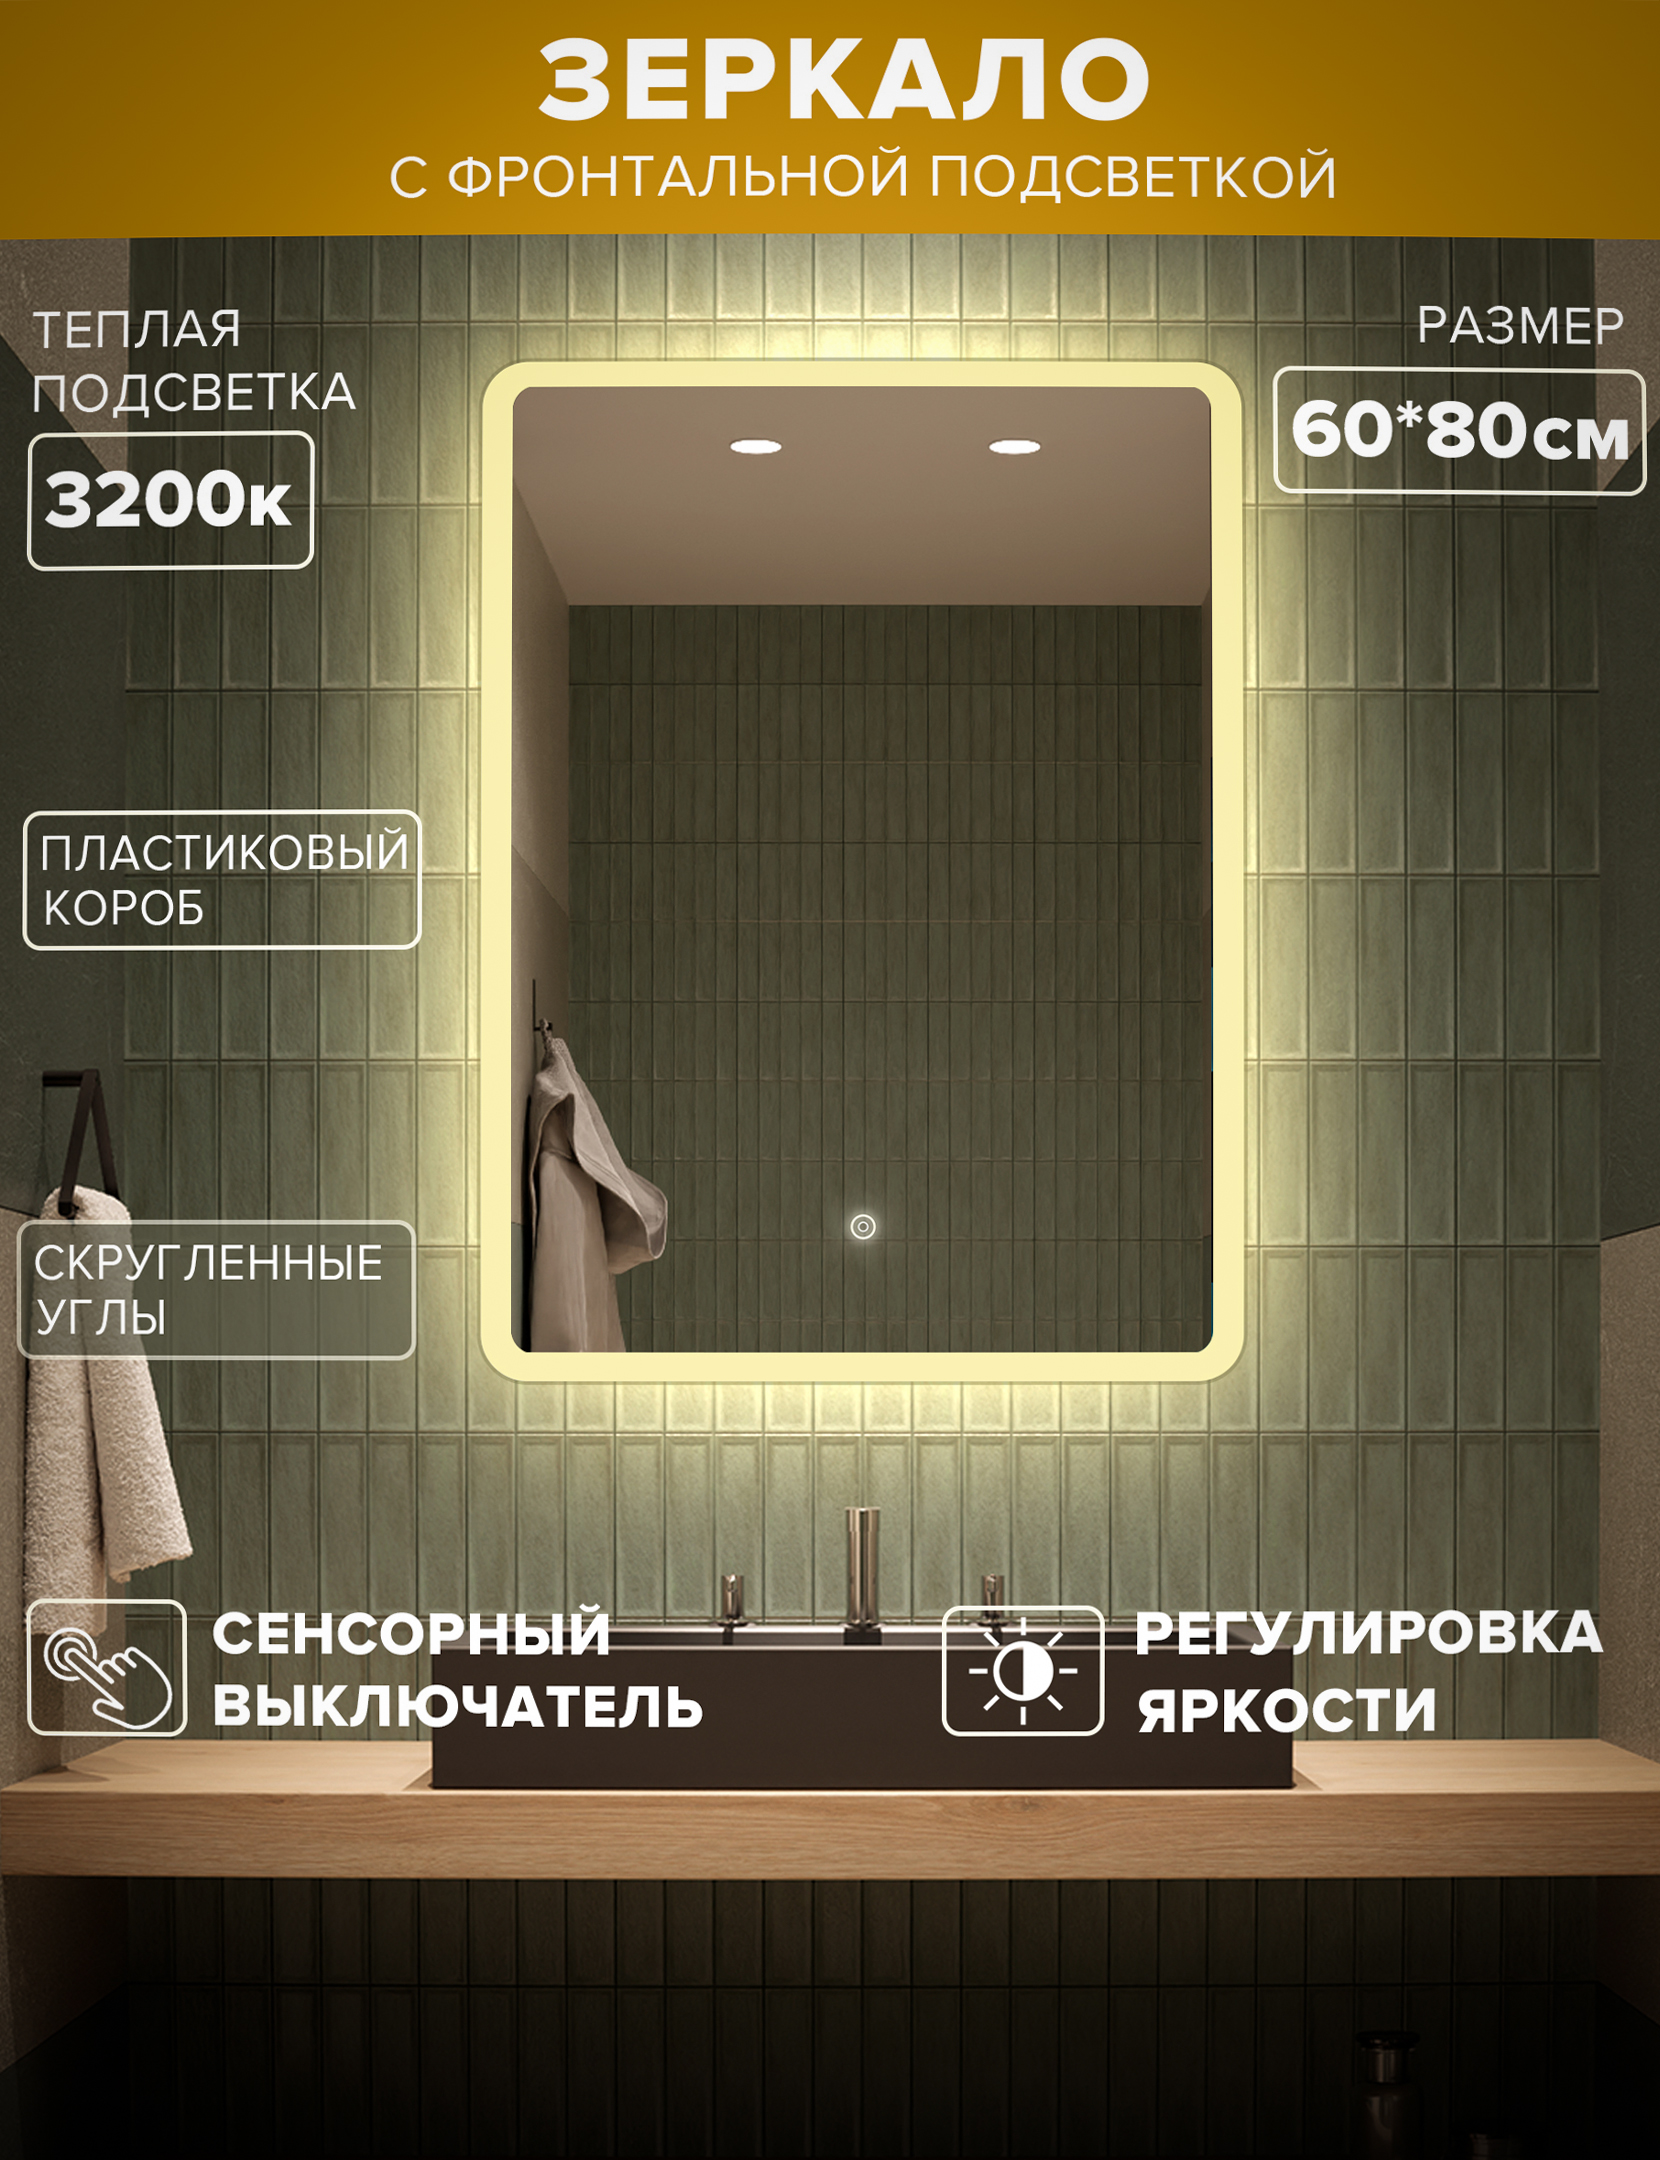 Зеркало для ванной Alfa Mirrors MDi-68t теплая подсветка 3200К, скругленные углы, 60*80см